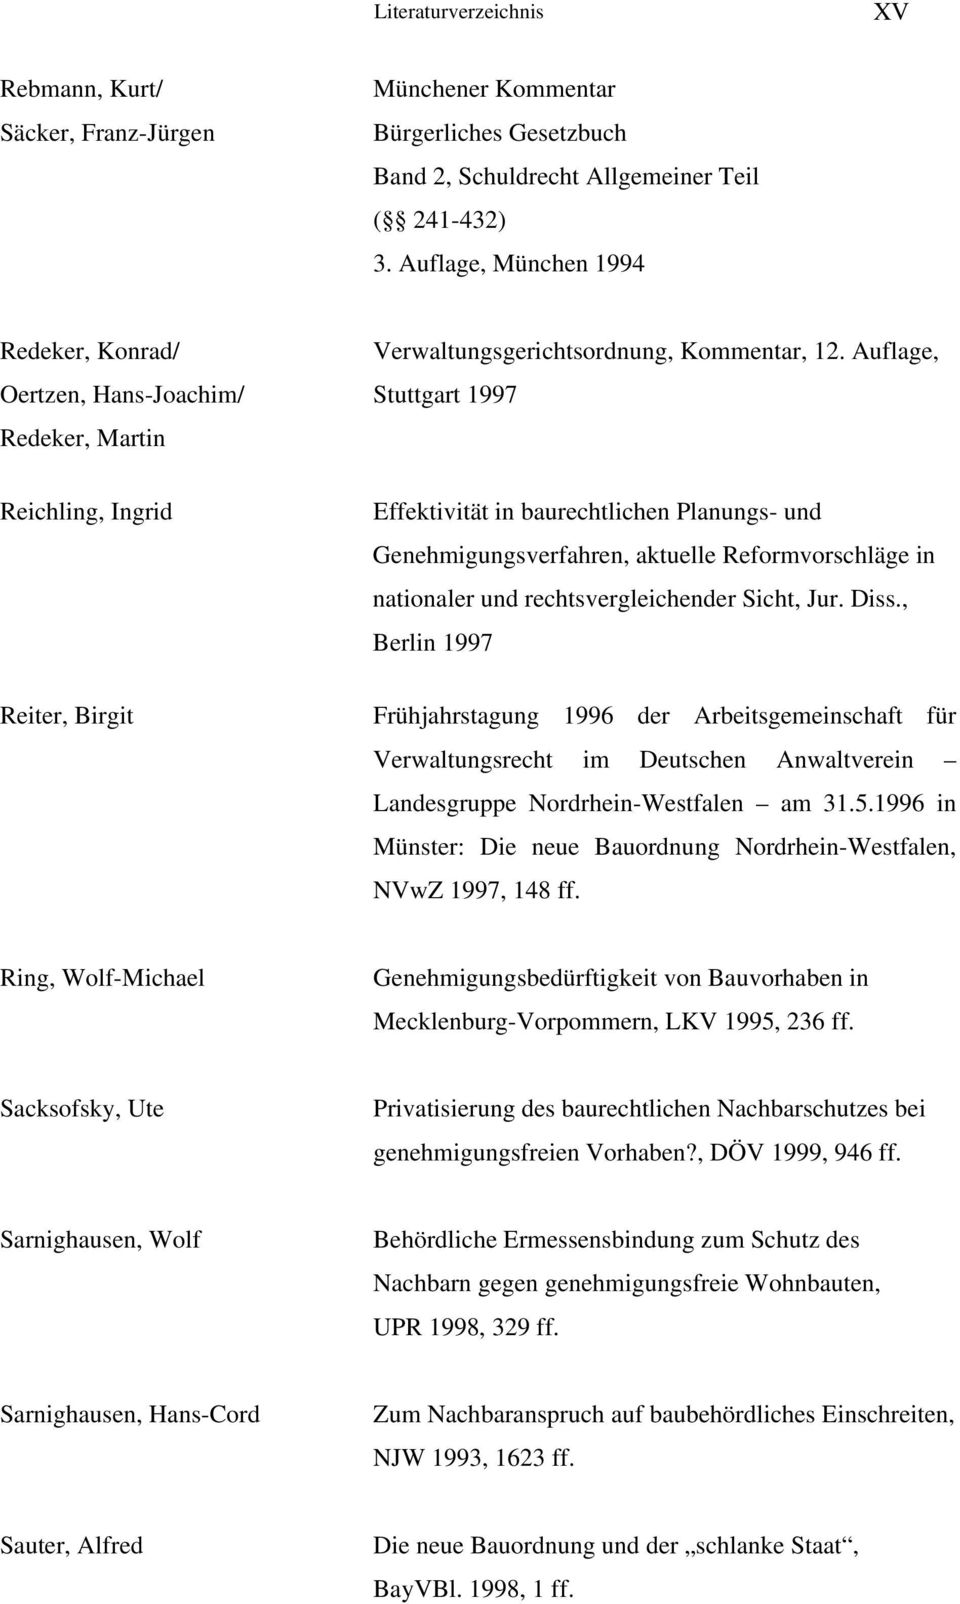 Auflage, Oertzen, Hans-Joachim/ Stuttgart 1997 Redeker, Martin Reichling, Ingrid Reiter, Birgit Effektivität in baurechtlichen Planungs- und Genehmigungsverfahren, aktuelle Reformvorschläge in